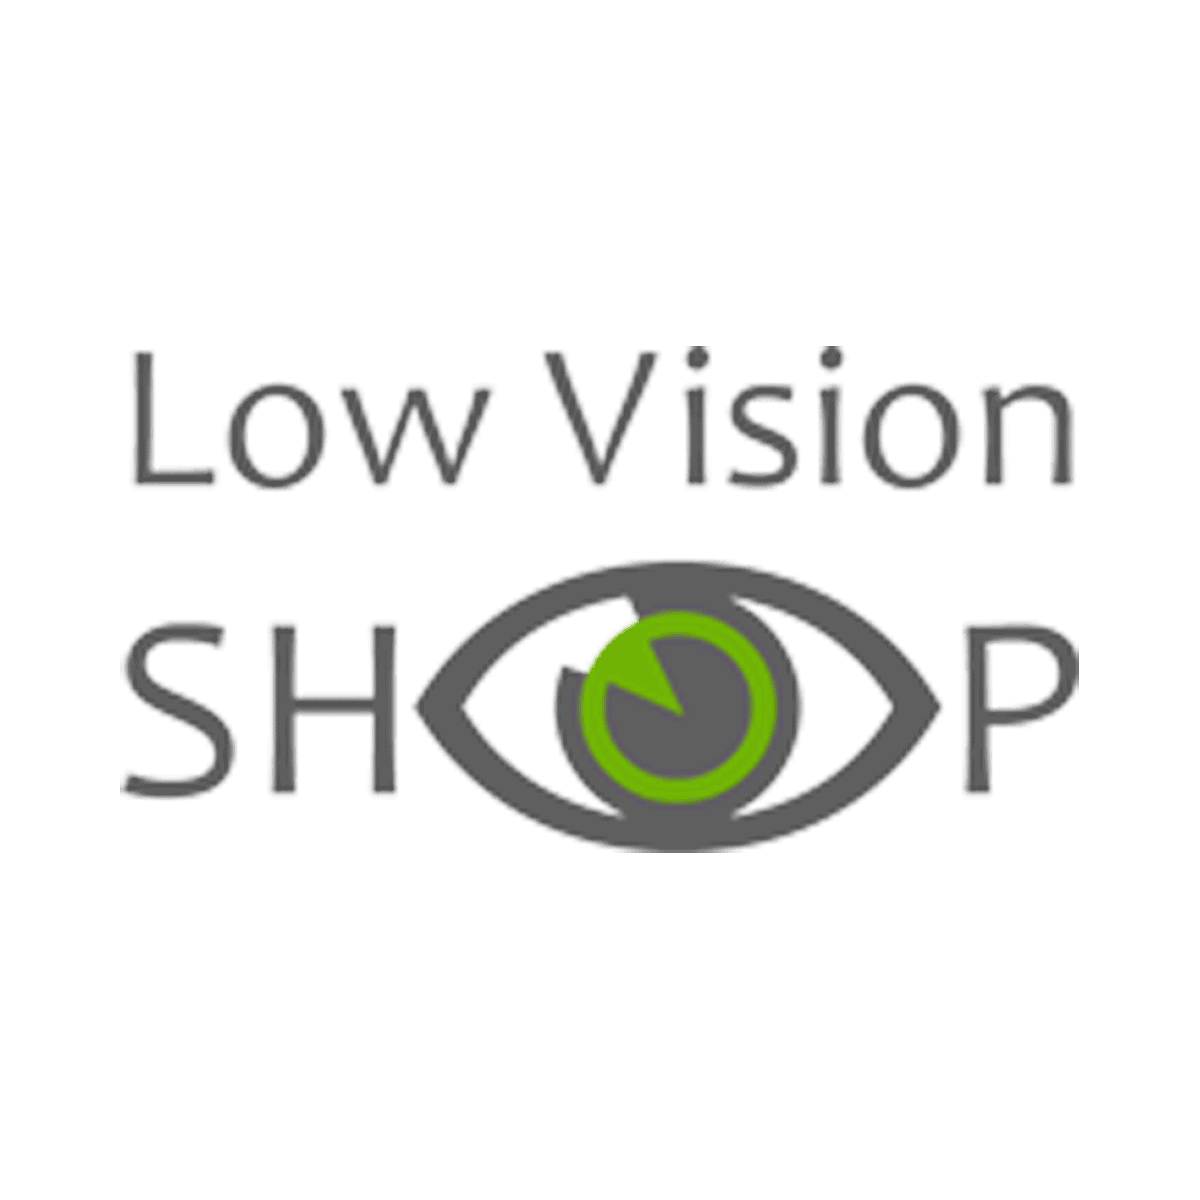 Low vision Shop